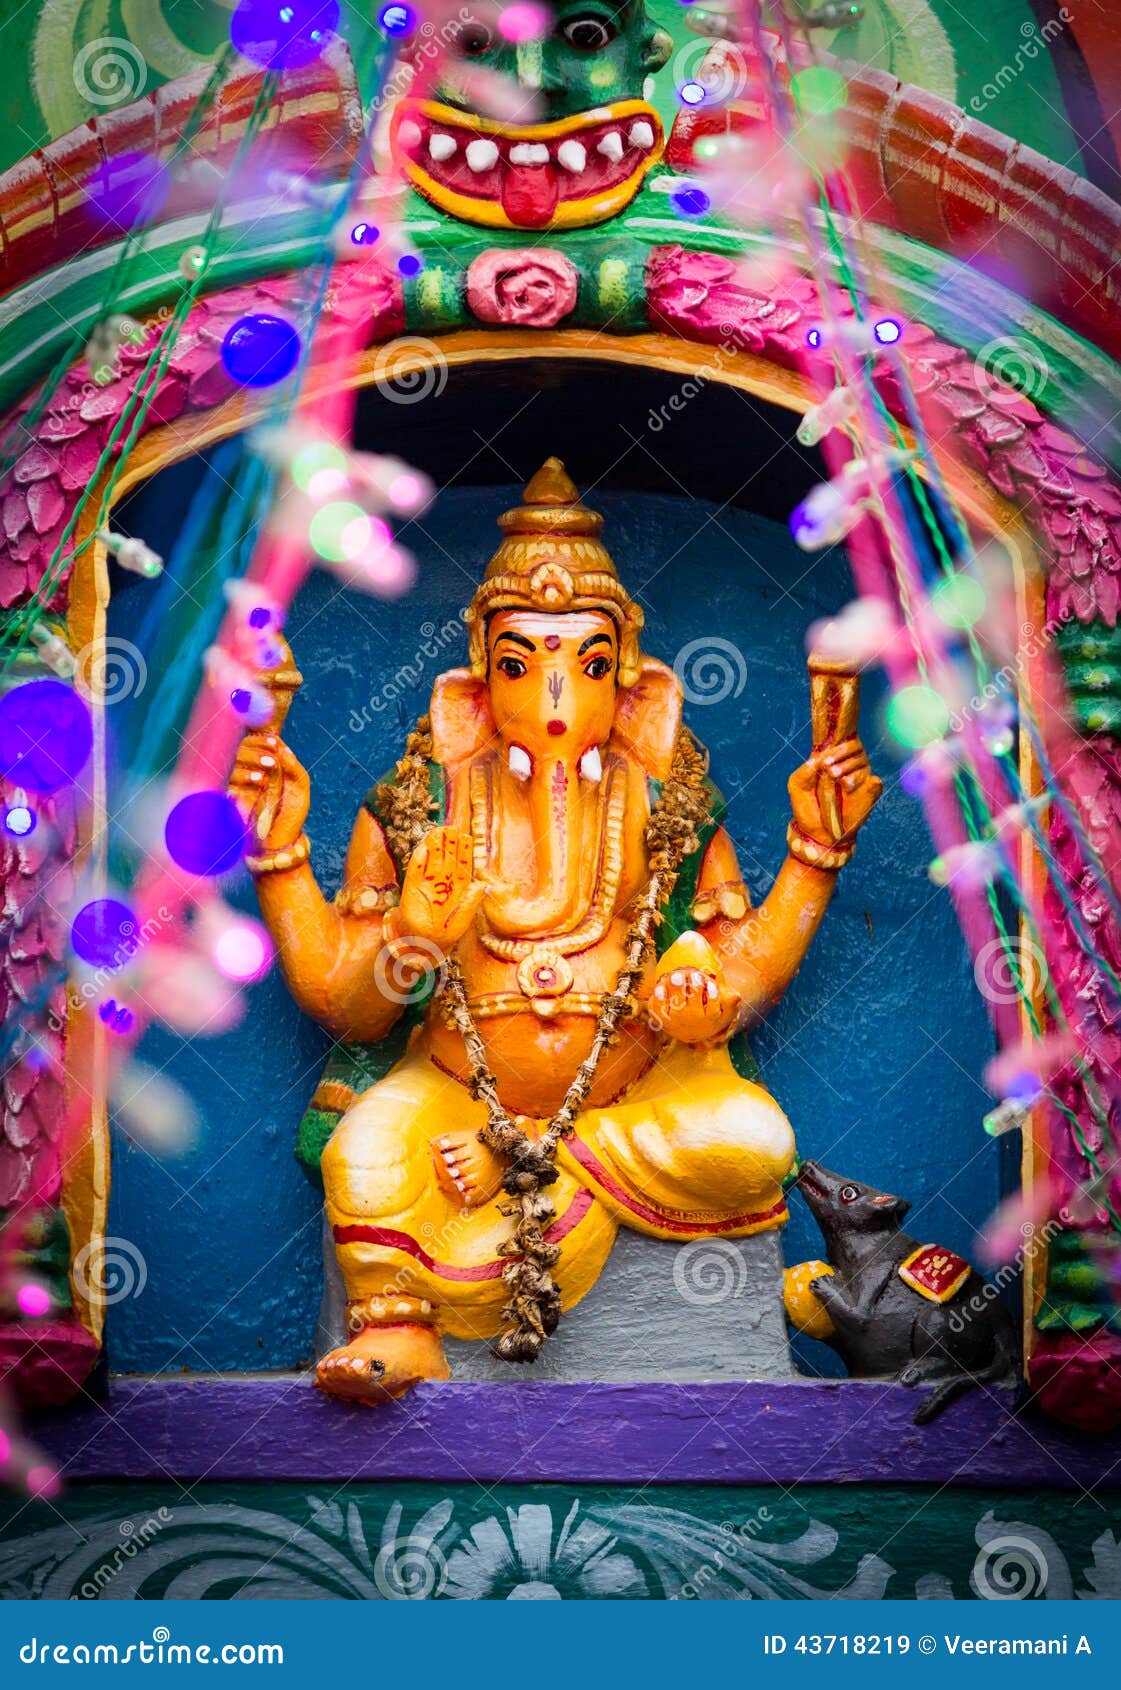 Ganapathy (Indian Deity) stock image. Image of southindia - 43718219